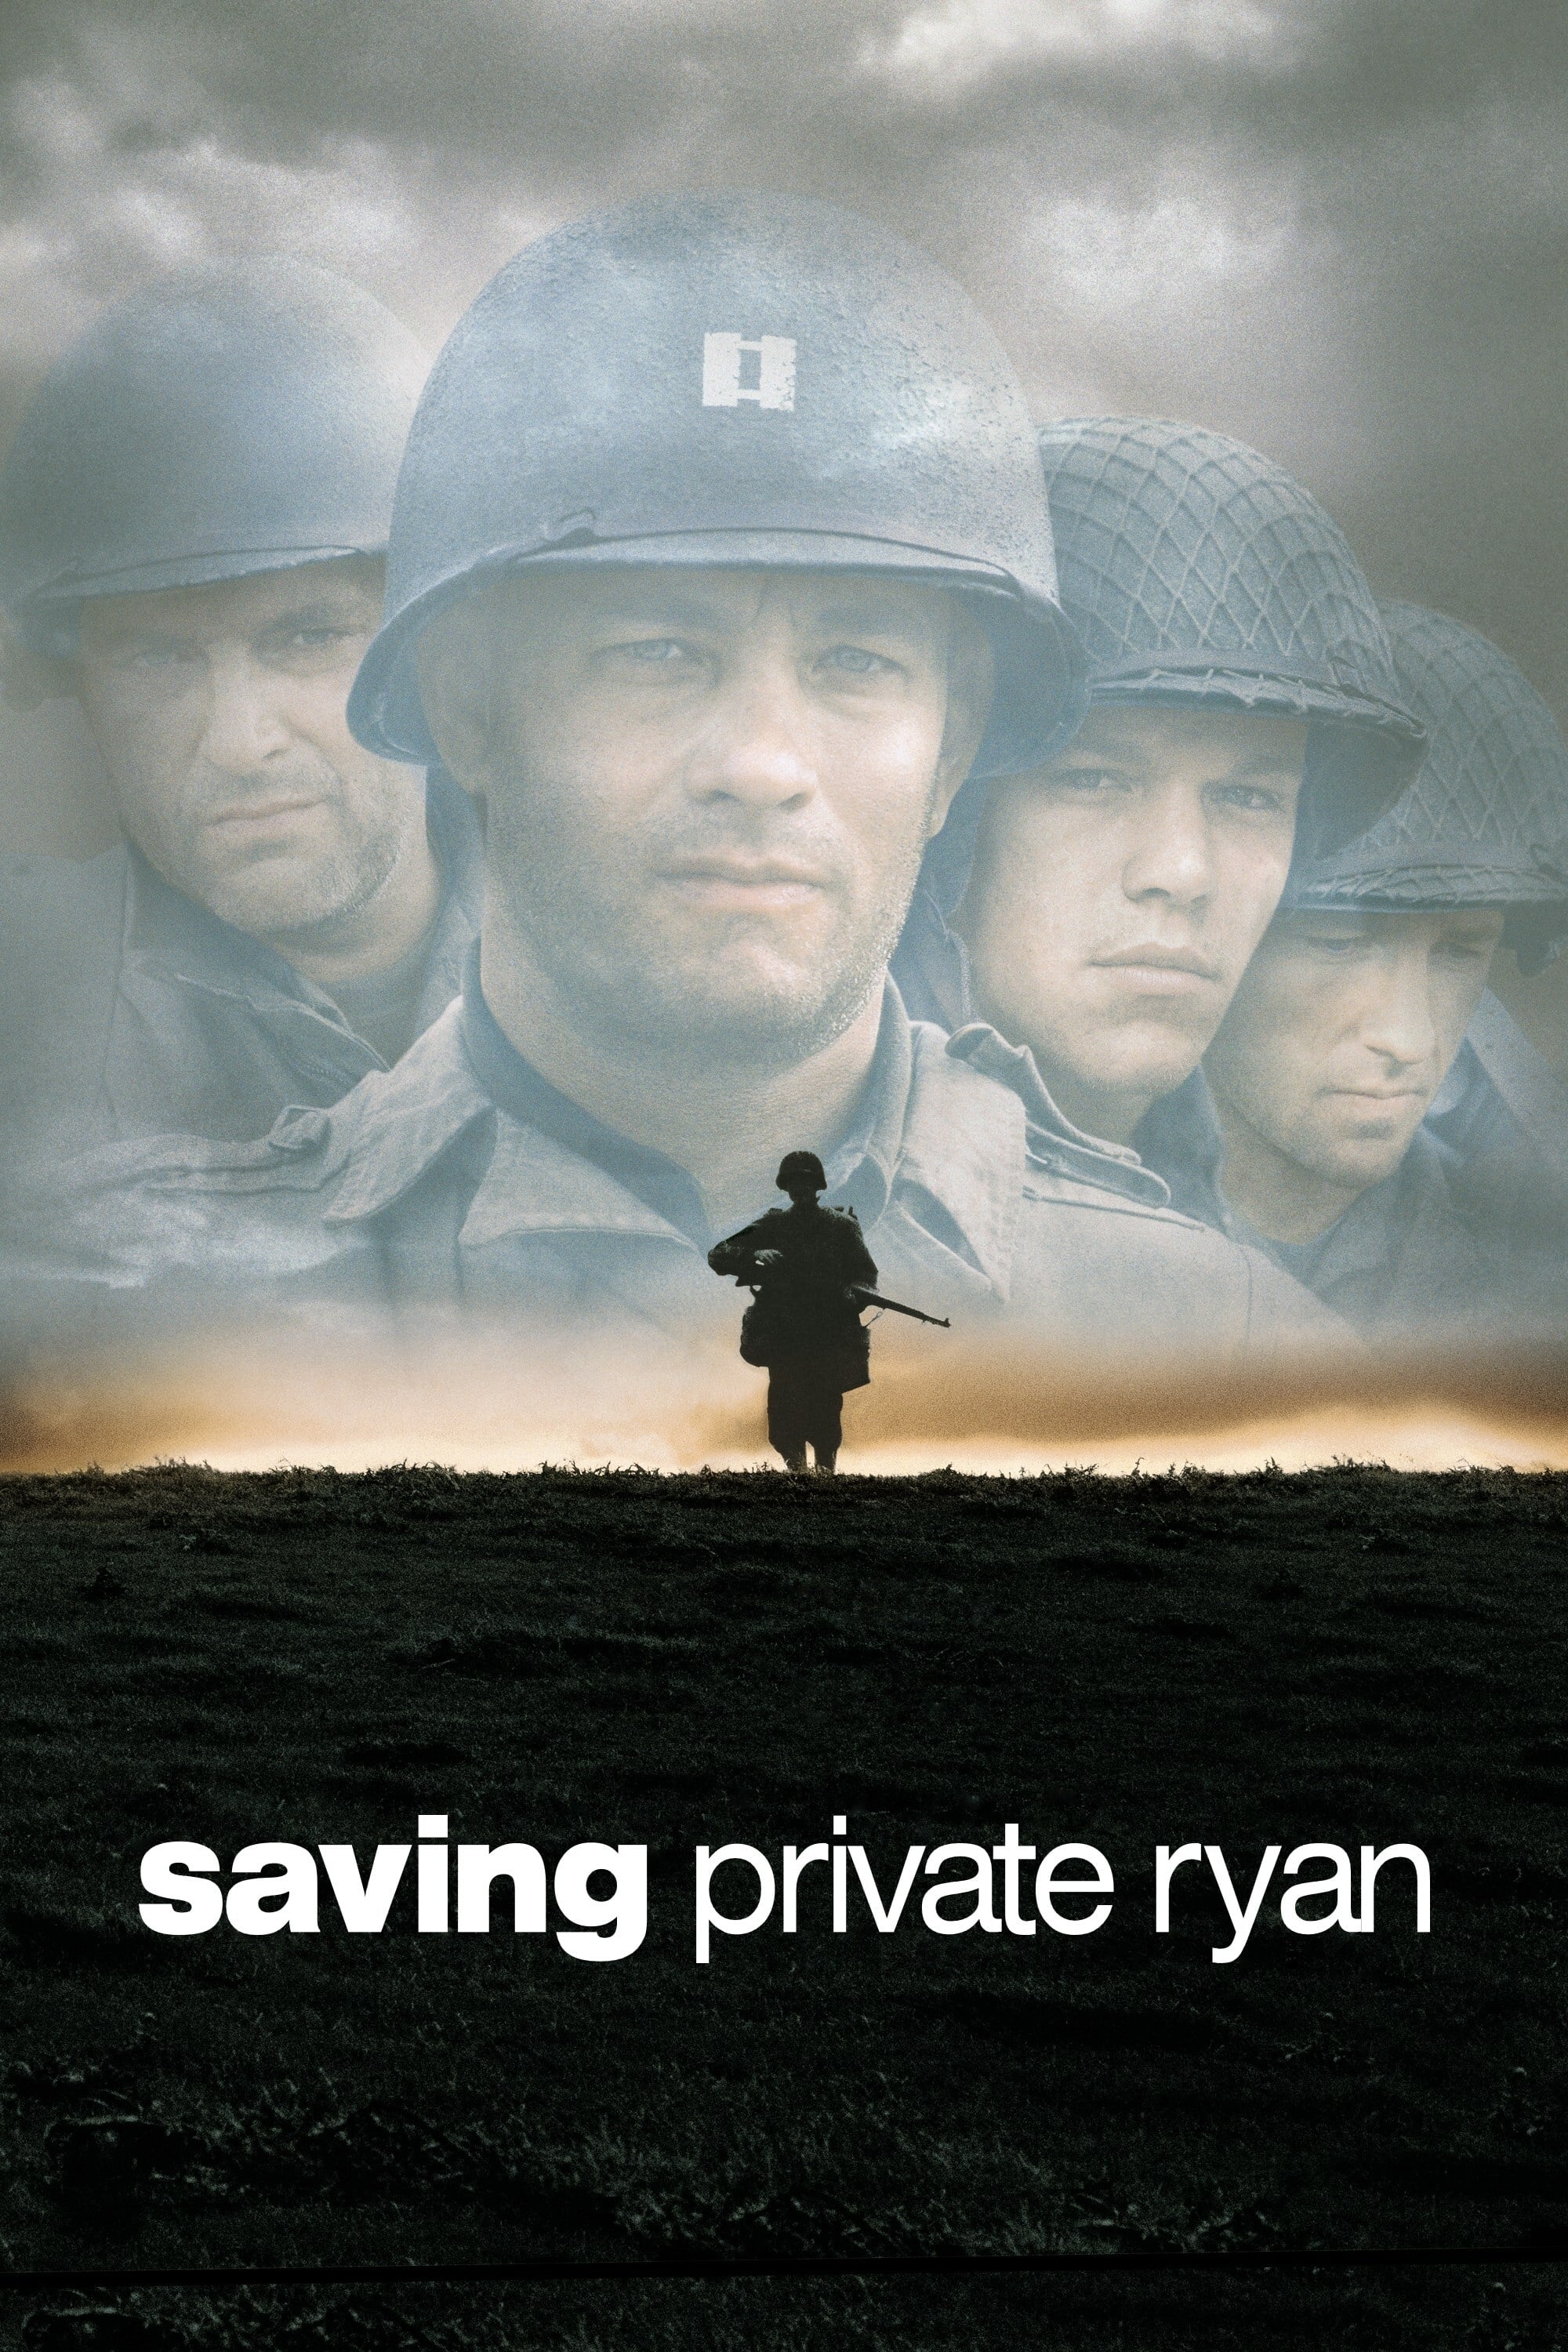 O Resgate do Soldado Ryan